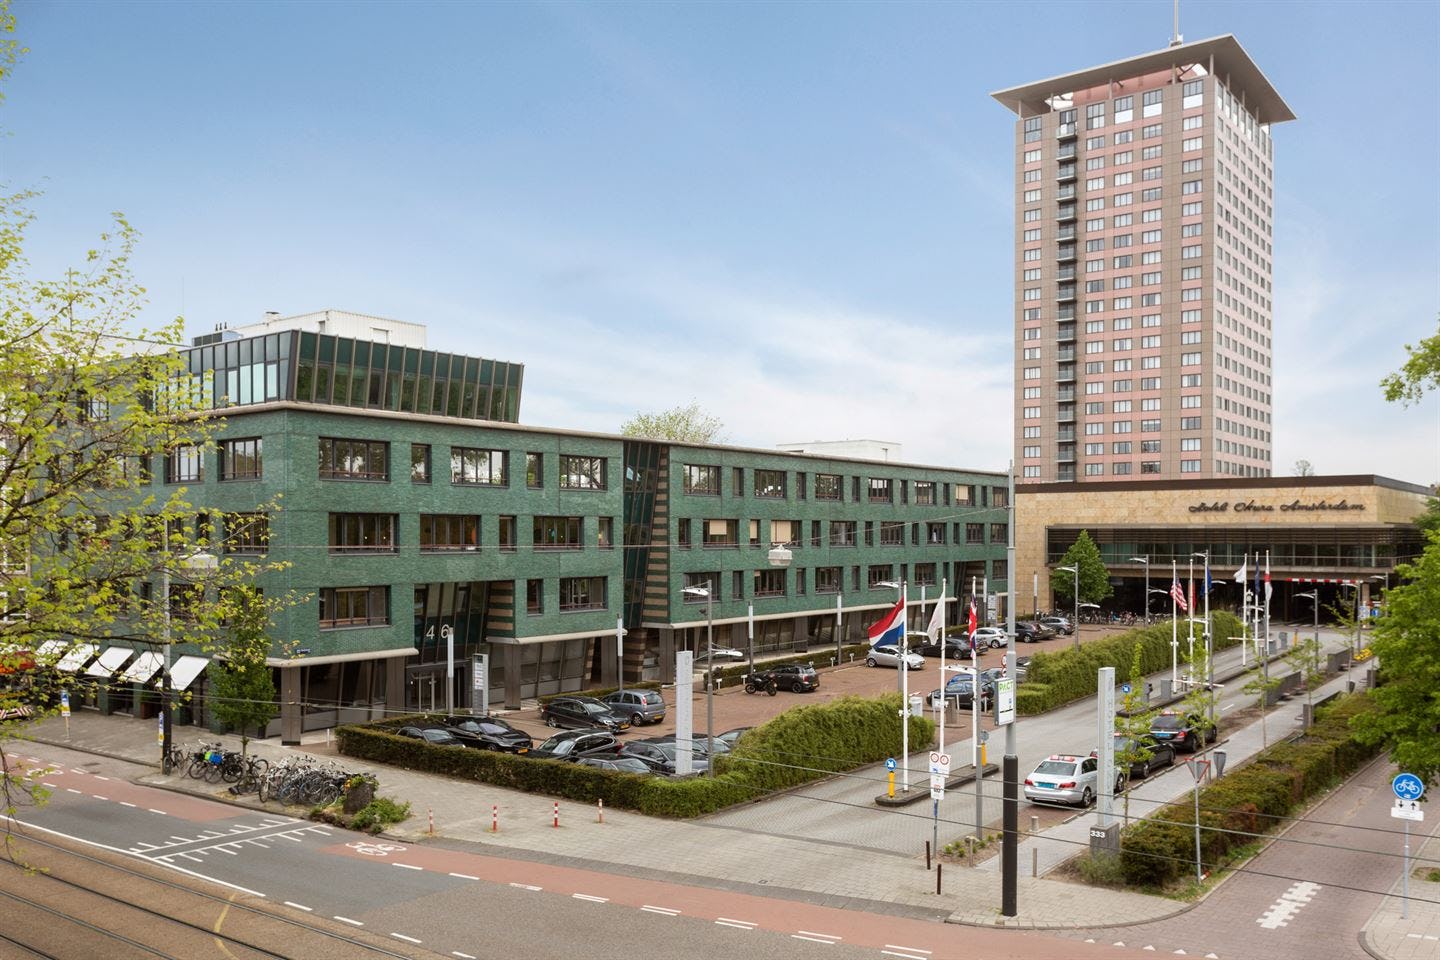 Zweden verkopen kantoor Emerald House in Amsterdam